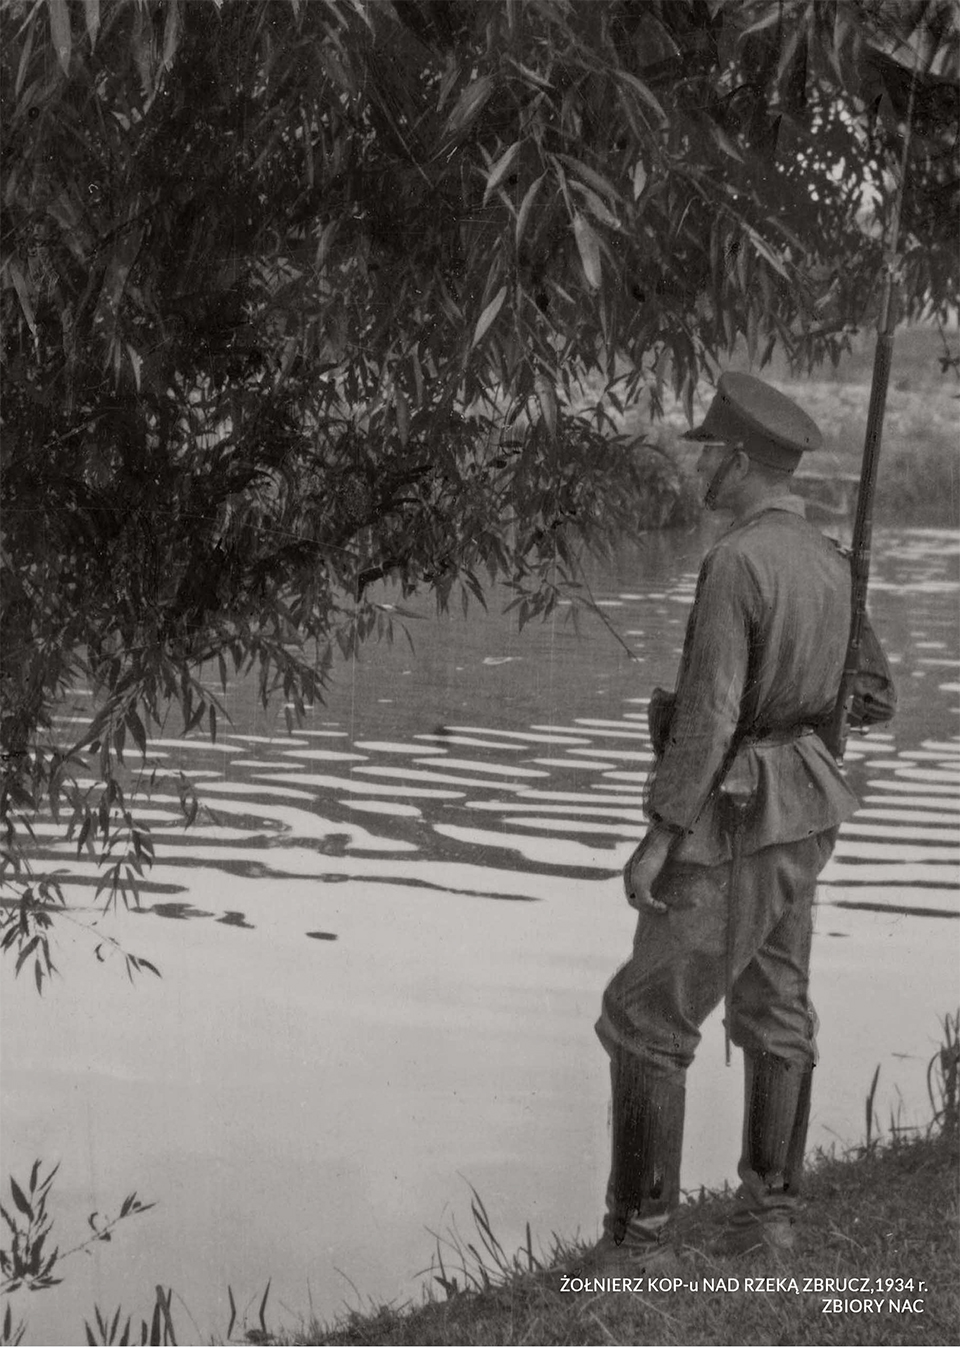 Zbiory NAC: Żołnierz KOP-u nad rzeką Zbrucz, 1934 r.